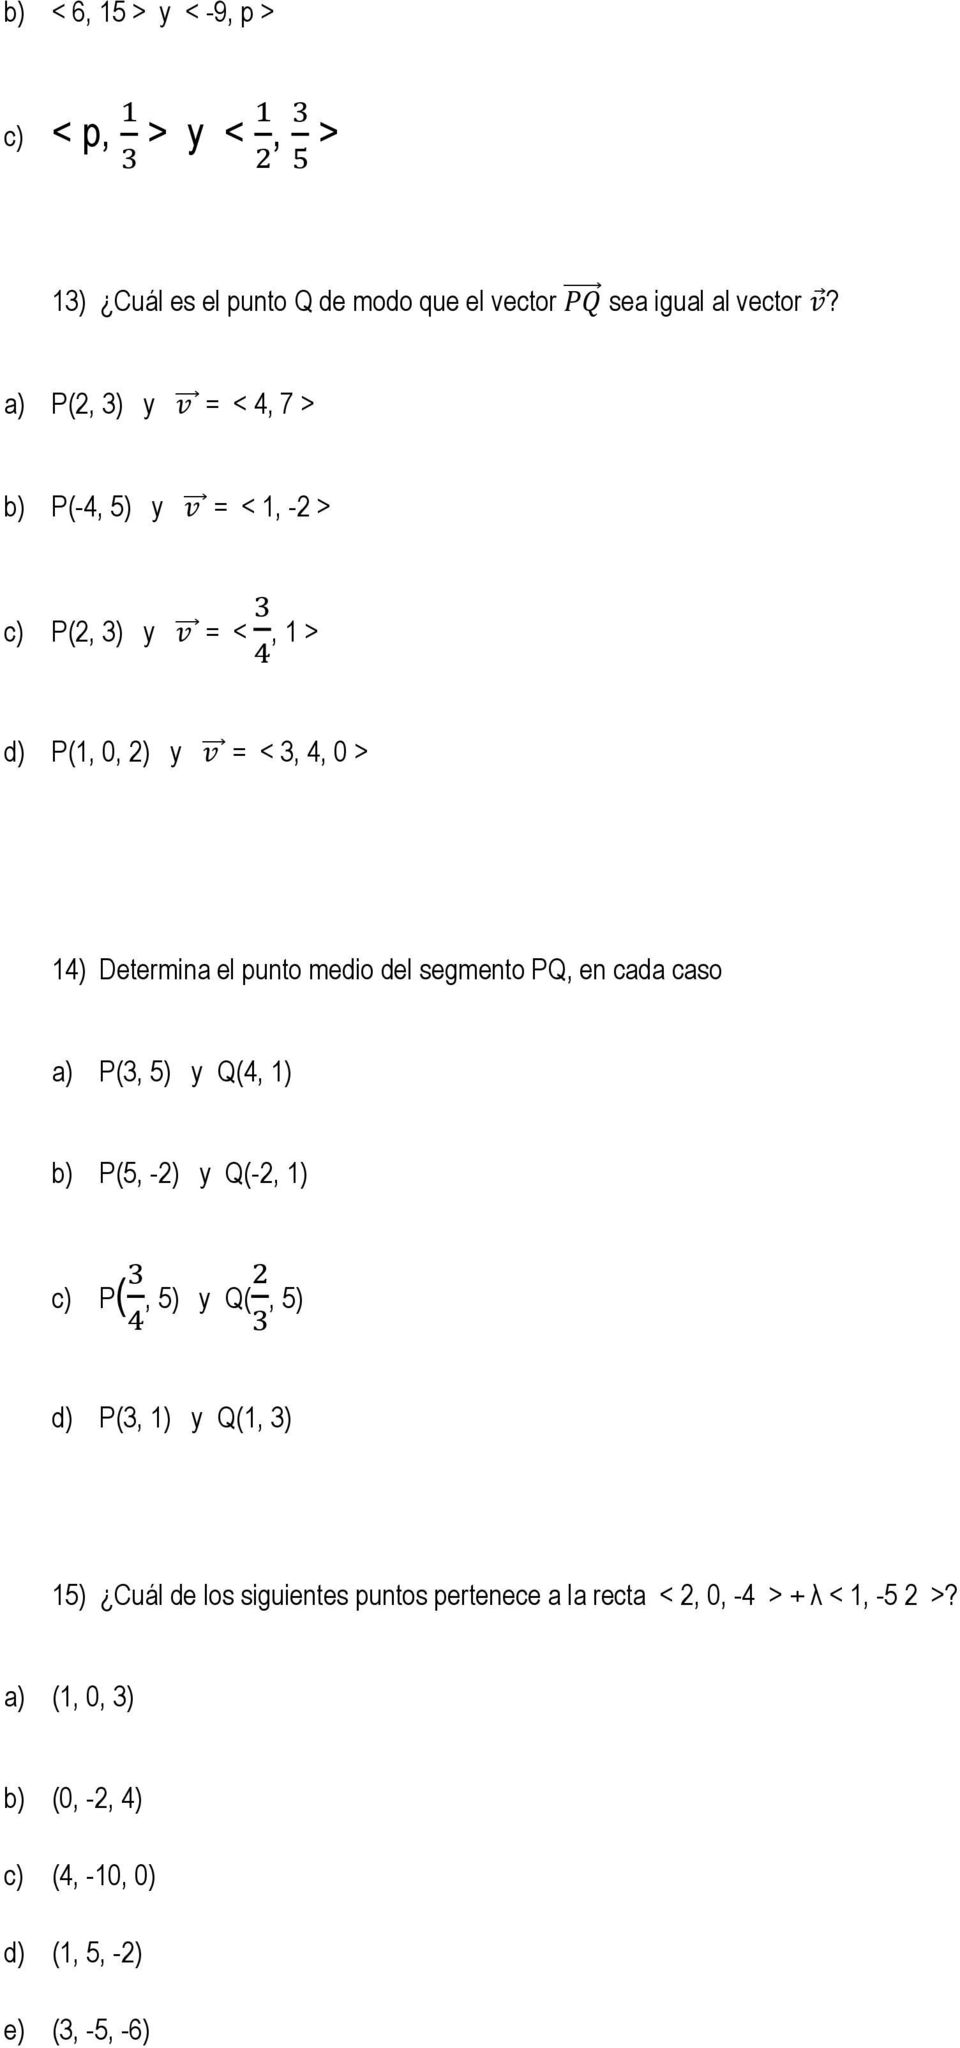 medio del segmento PQ, en cada caso a) P(, 5) y Q(4, 1) b) P(5, -2) y Q(-2, 1) c) P( 4, 5) y Q(2, 5) d) P(, 1) y Q(1, ) 15) Cuál